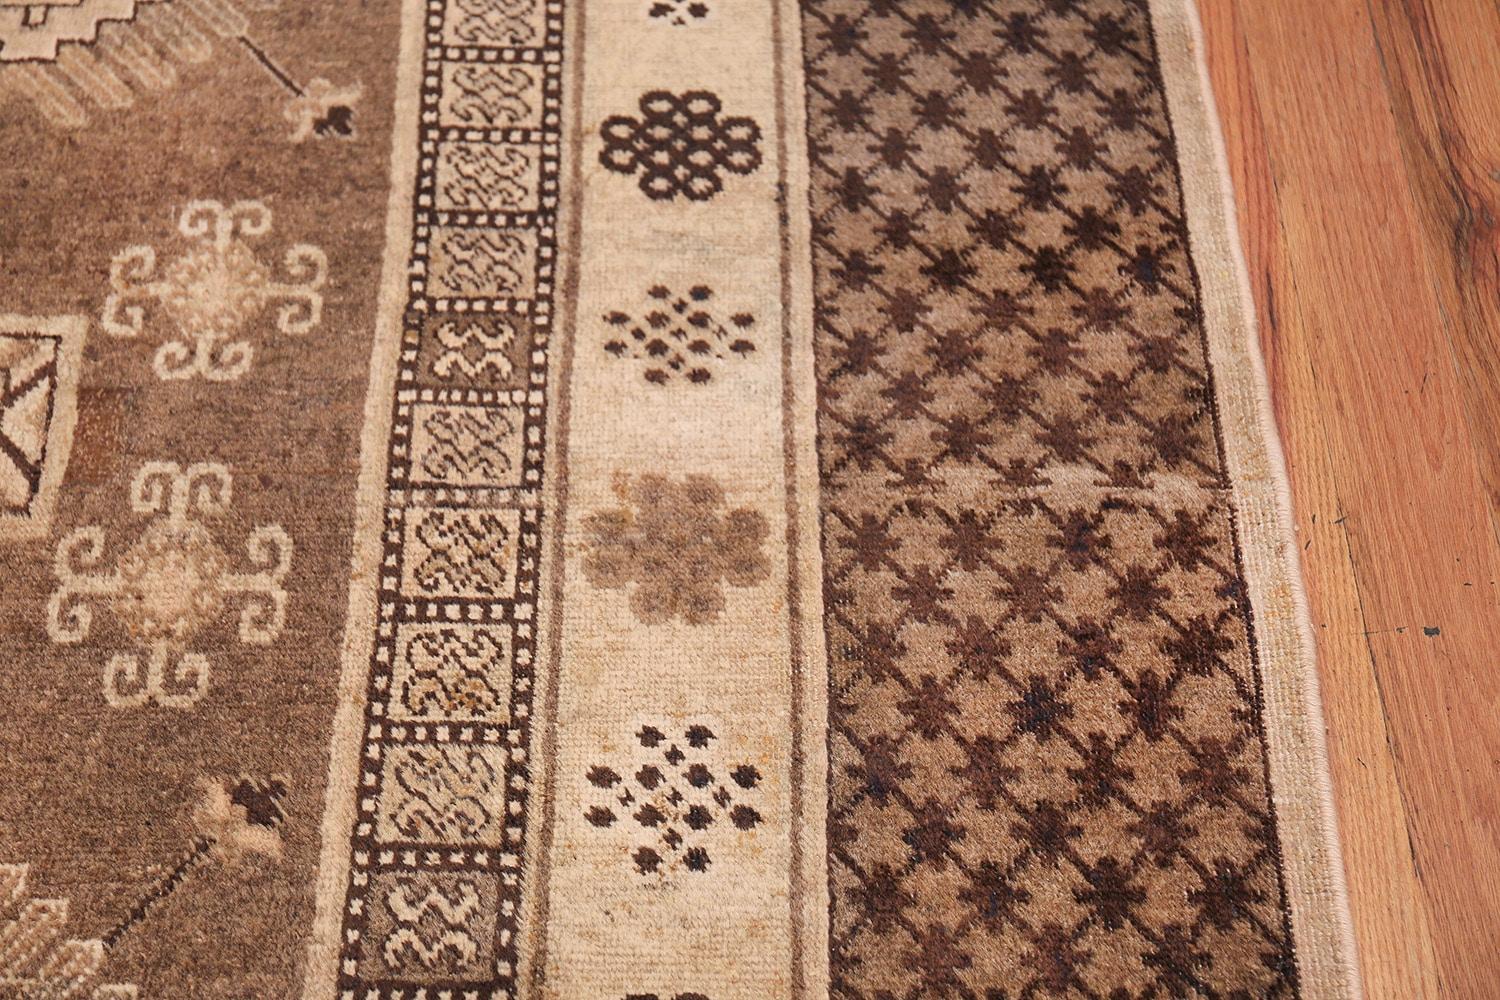 Magnifique et décoratif tapis oriental ancien Khotan, Pays d'origine : Turkestan oriental, Circa date : 1910s. Taille : 6 ft 7 in x 11 ft 7 in (2.01 m x 3.53 m)

